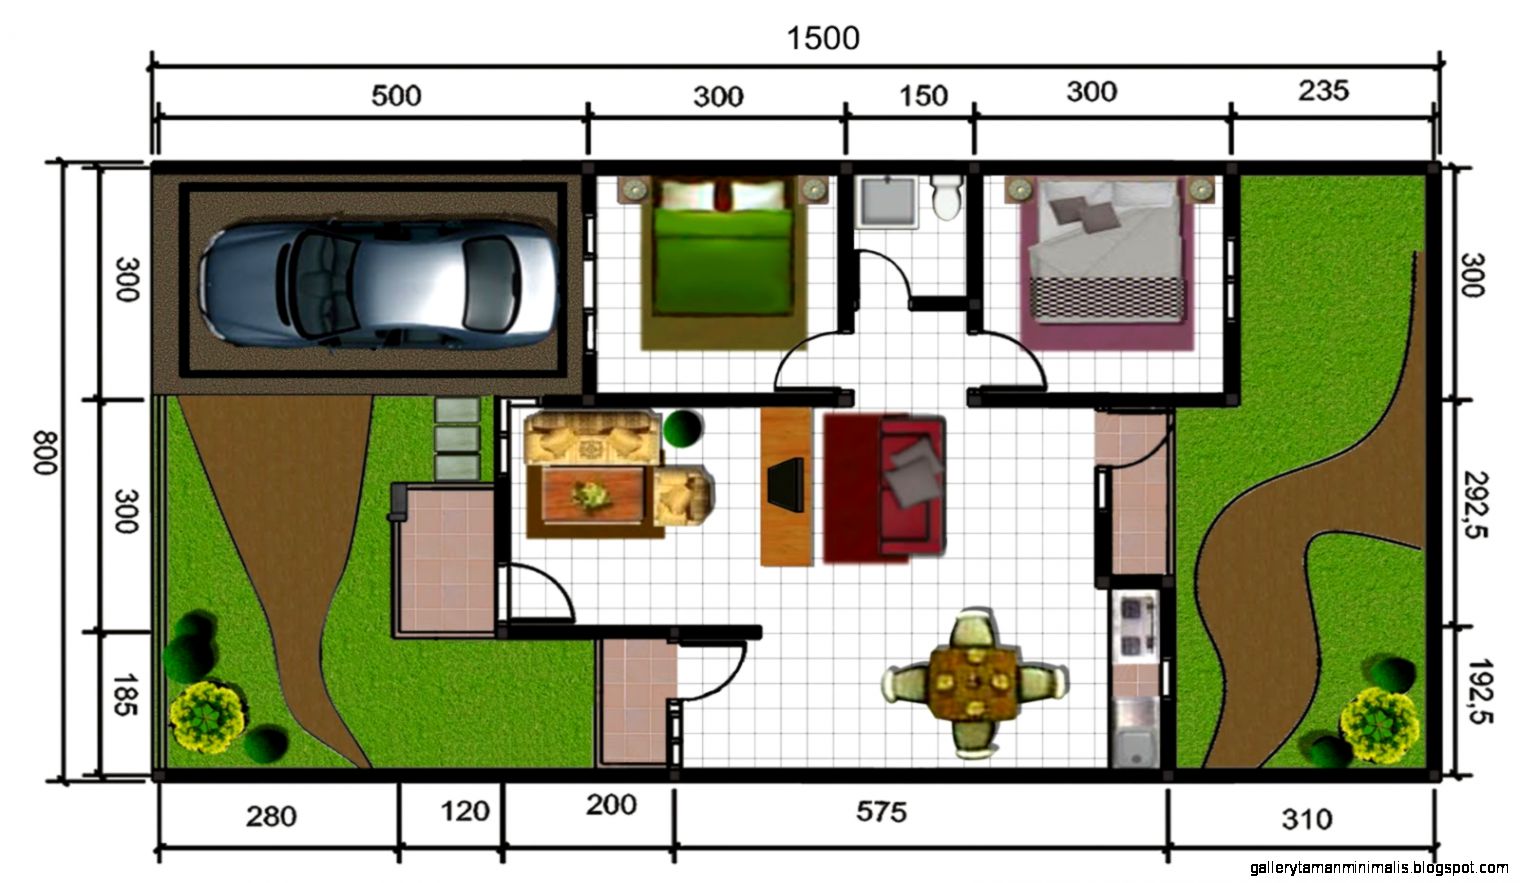  Desain  Taman  Autocad Kumpulan Desain  Rumah